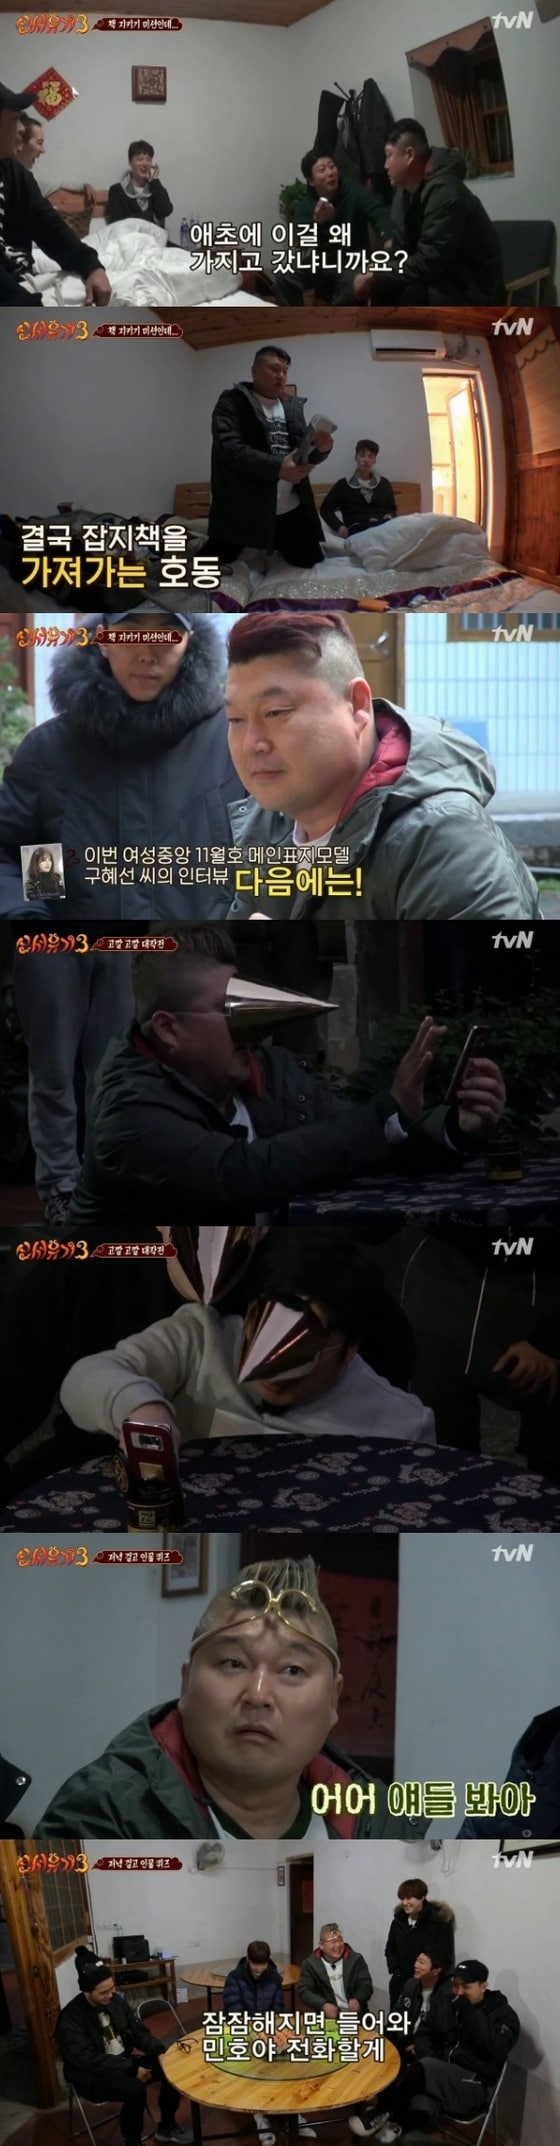 강호동 이수근 은지원 안재현 규현 송민호가 '신서유기3'에 출연 중이다. © News1star / tvN '신서유기3' 7회 캡처